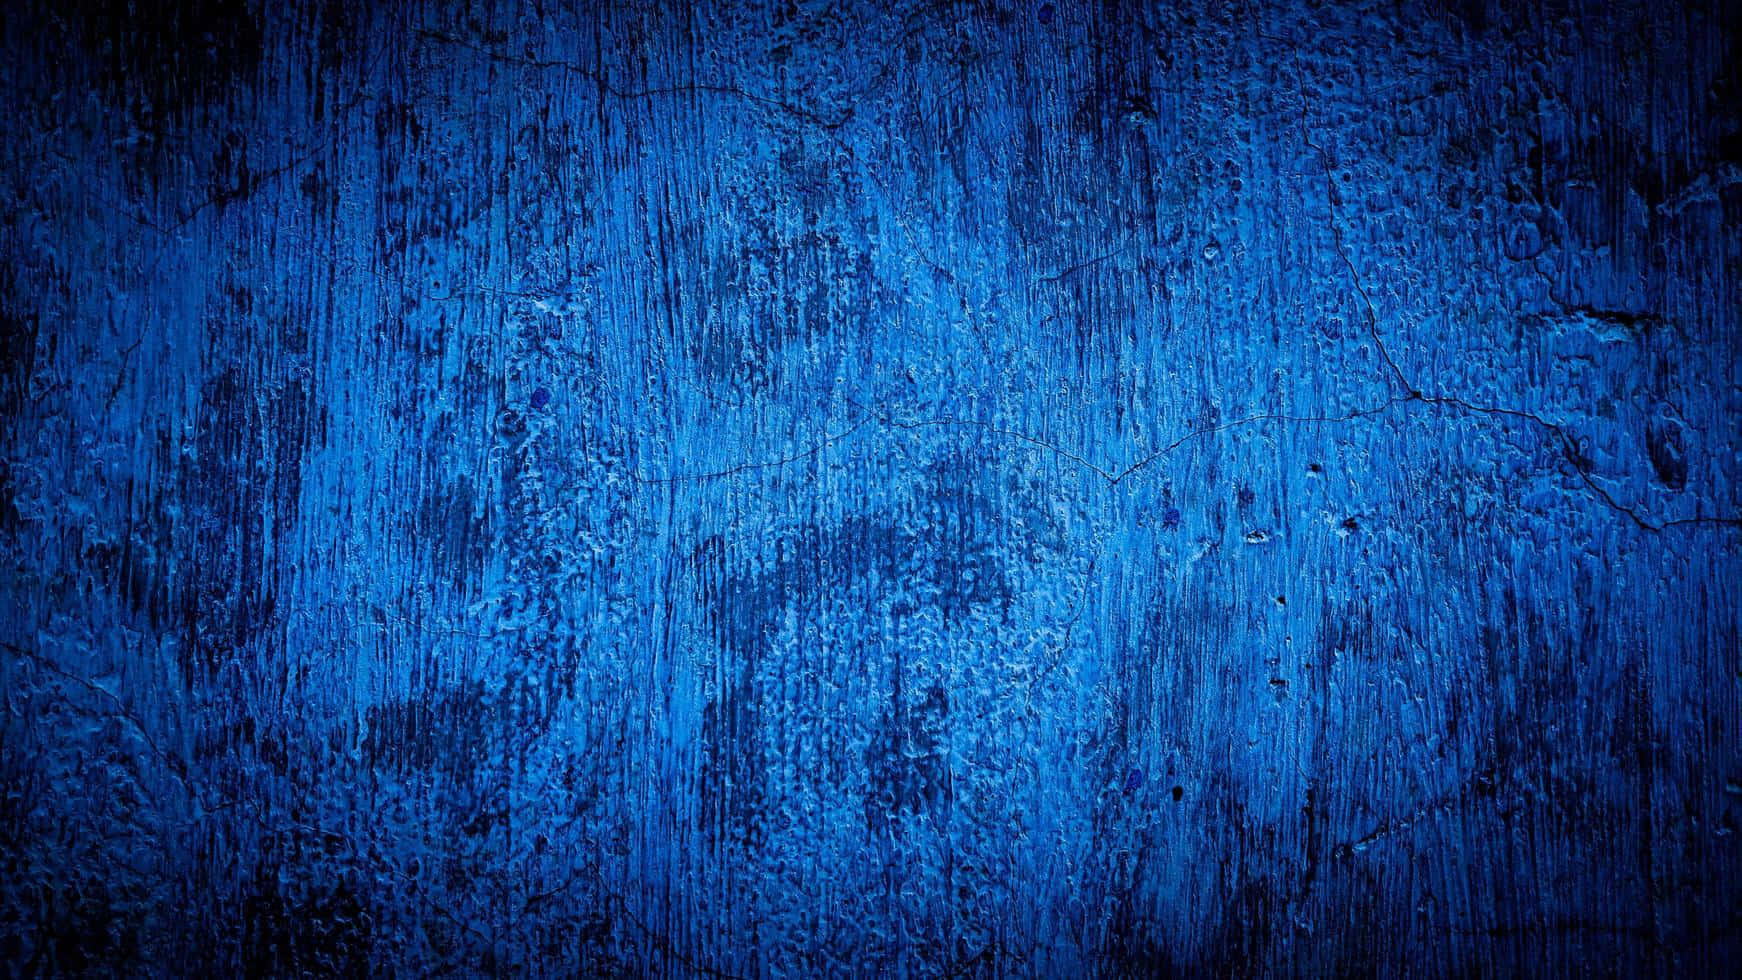 A Wall of Blue Grunge Wallpaper